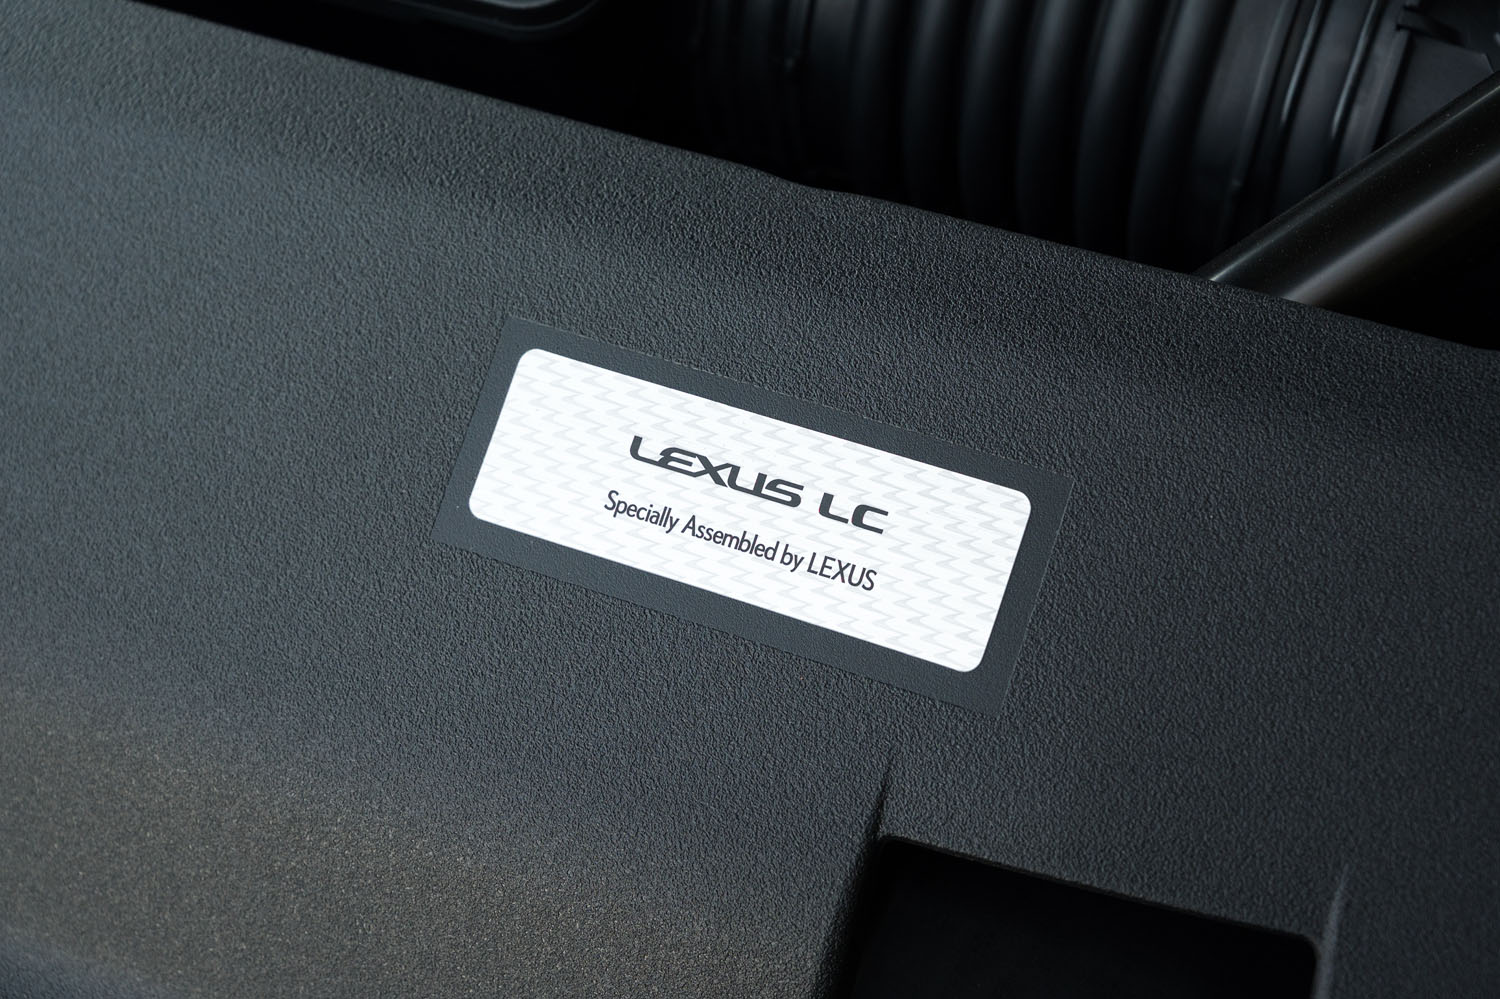 エンジンの前方には「Specially Assembled by LEXUS」と記されたプレートが貼られる。